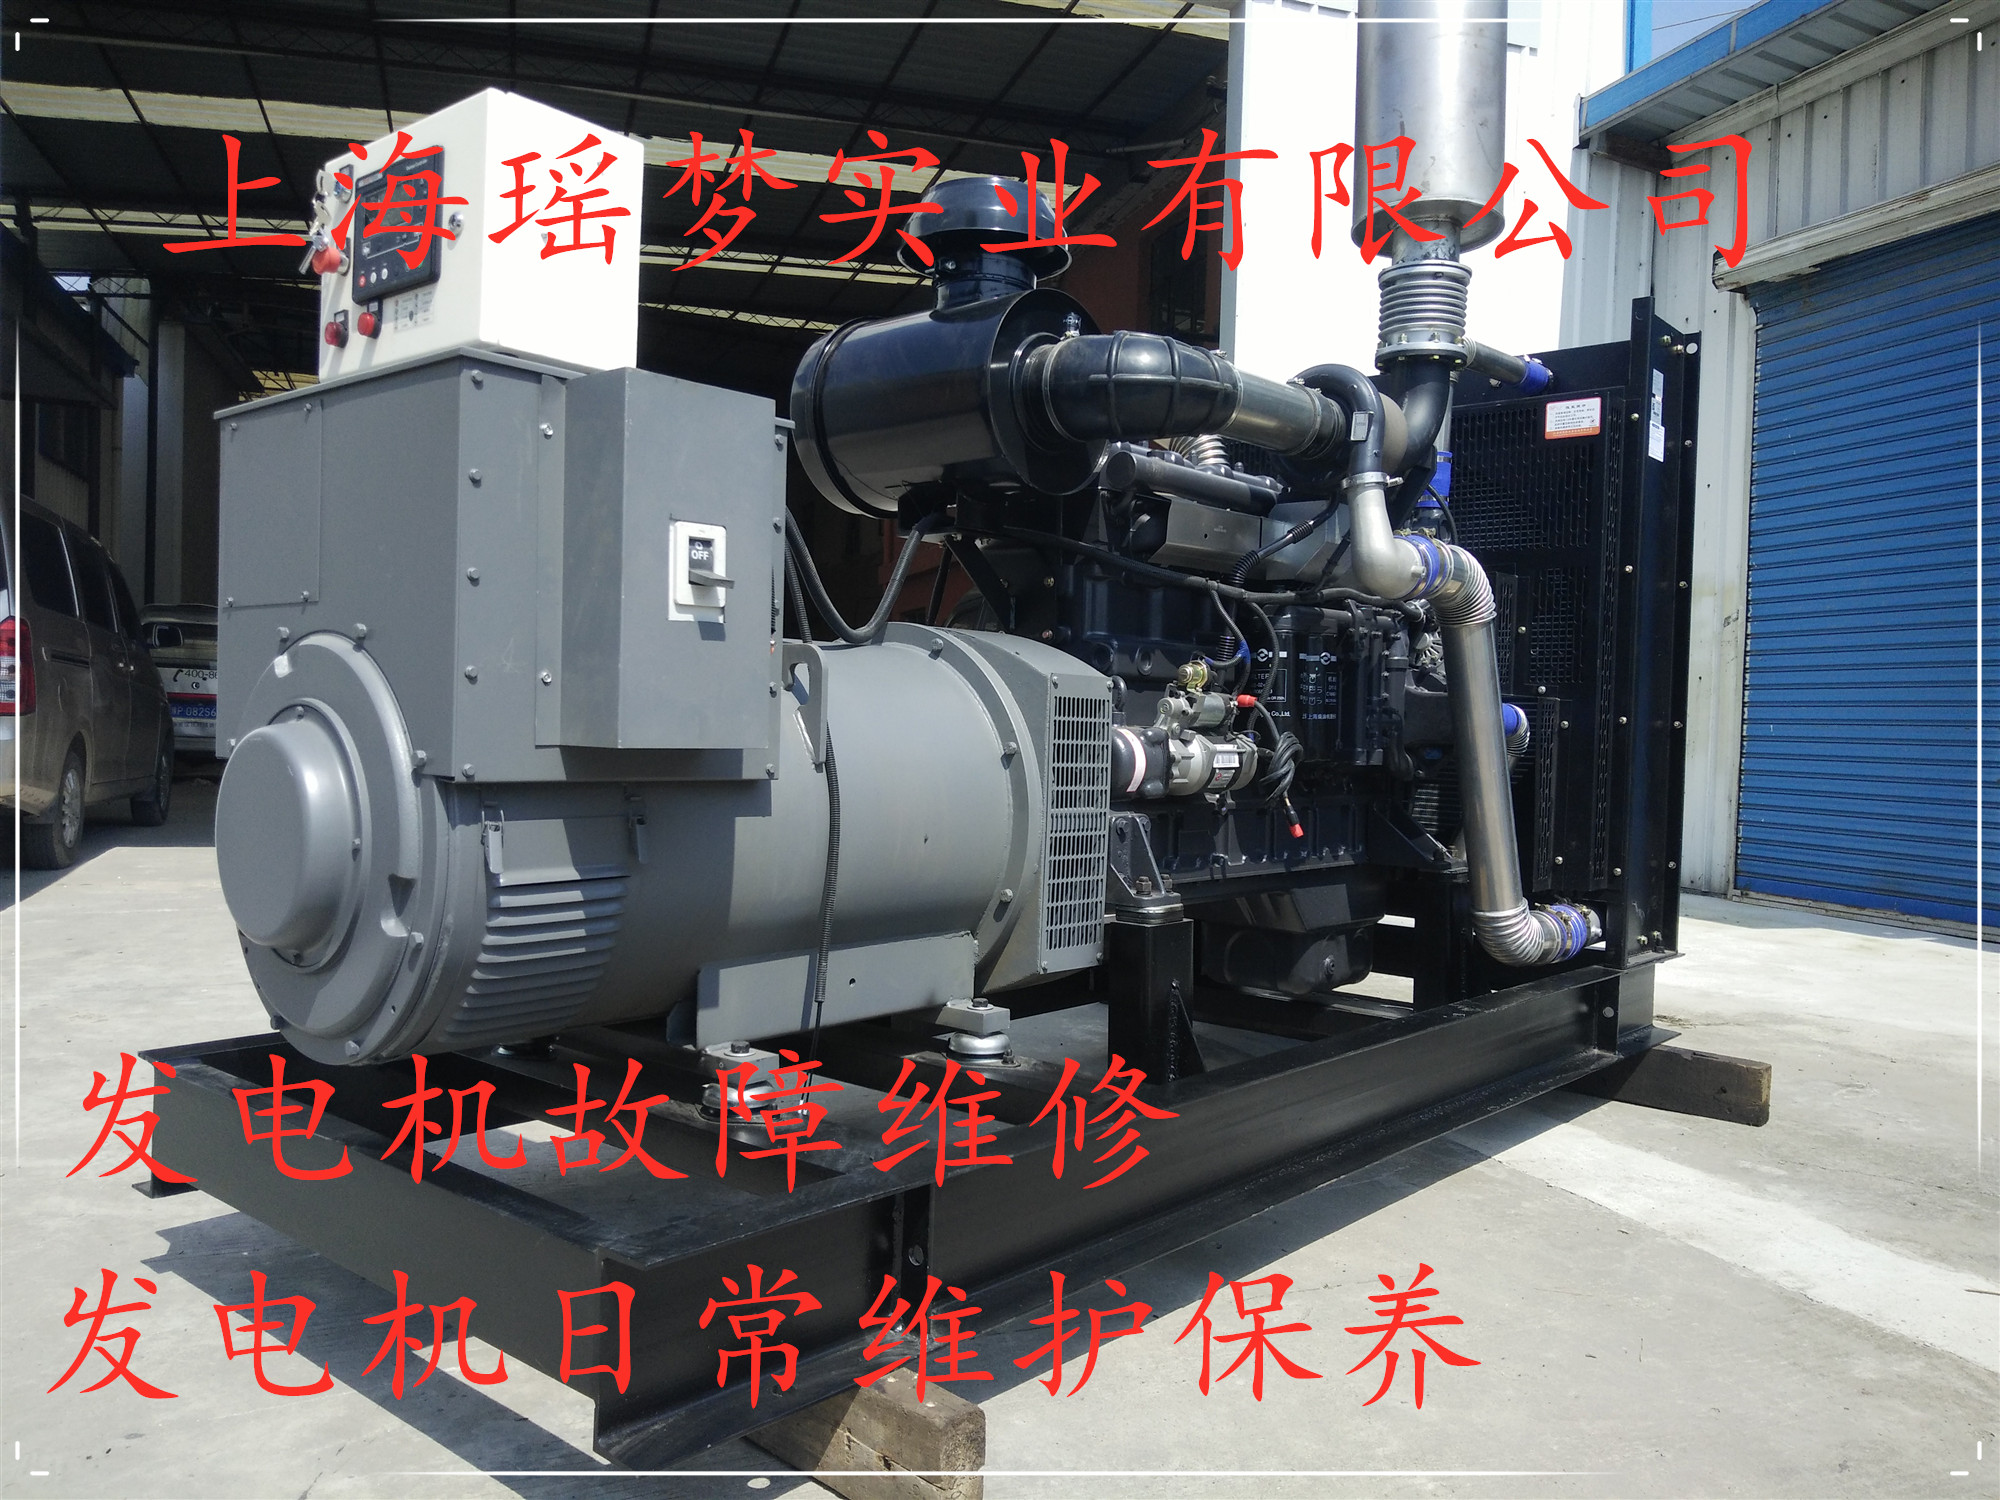 上海维修保养维柴油发电机消防水泵图片